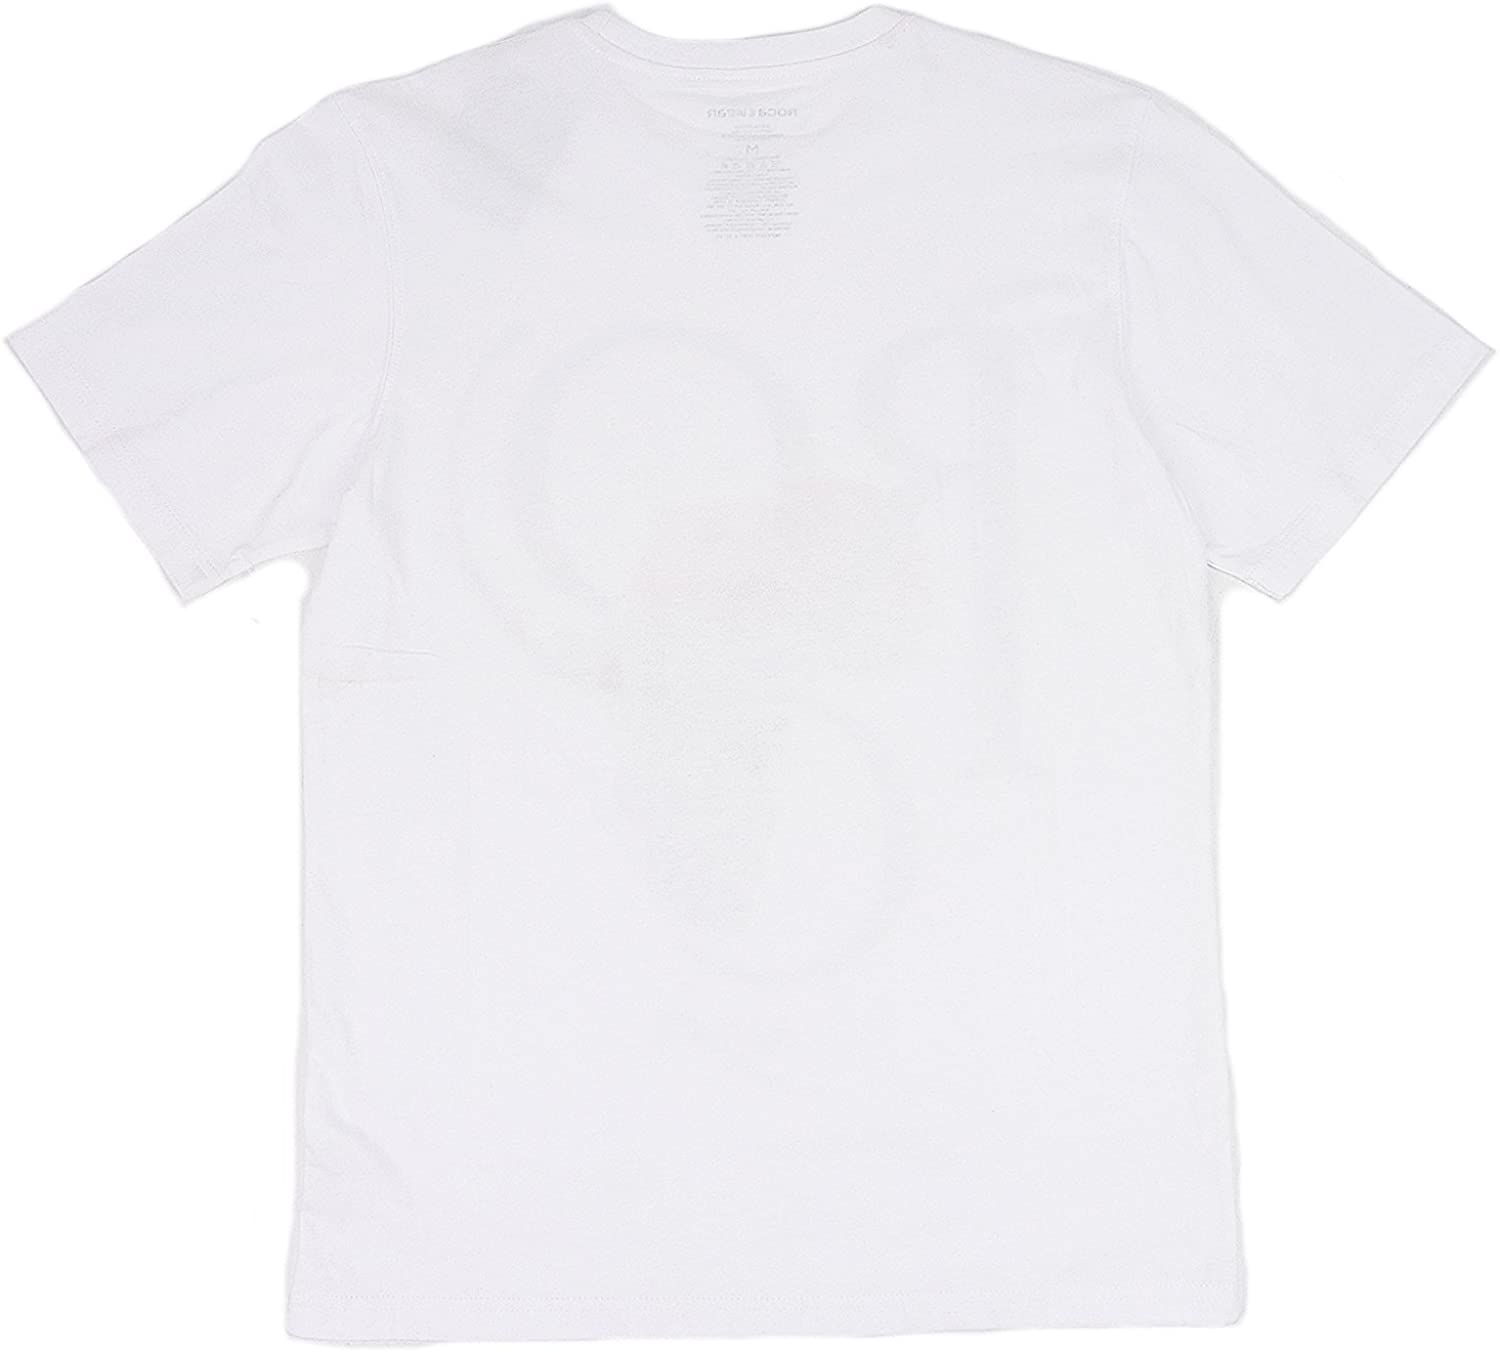 ROCA WEAR ロカウェア アフリカロゴ 半袖 Tシャツ ホワイト L